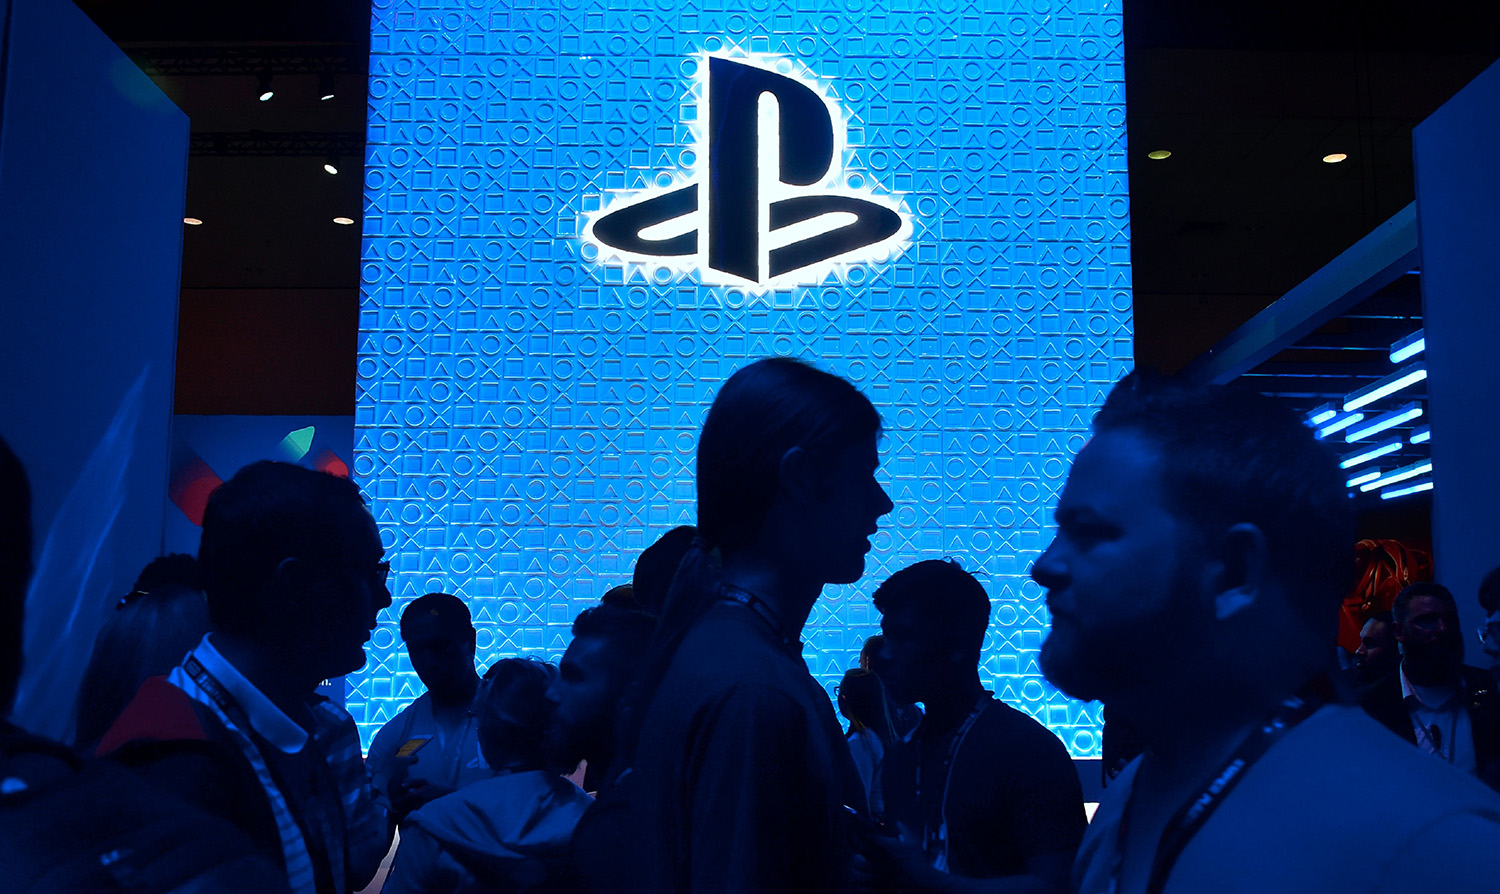 Sony PlayStation logo on a wall at E3